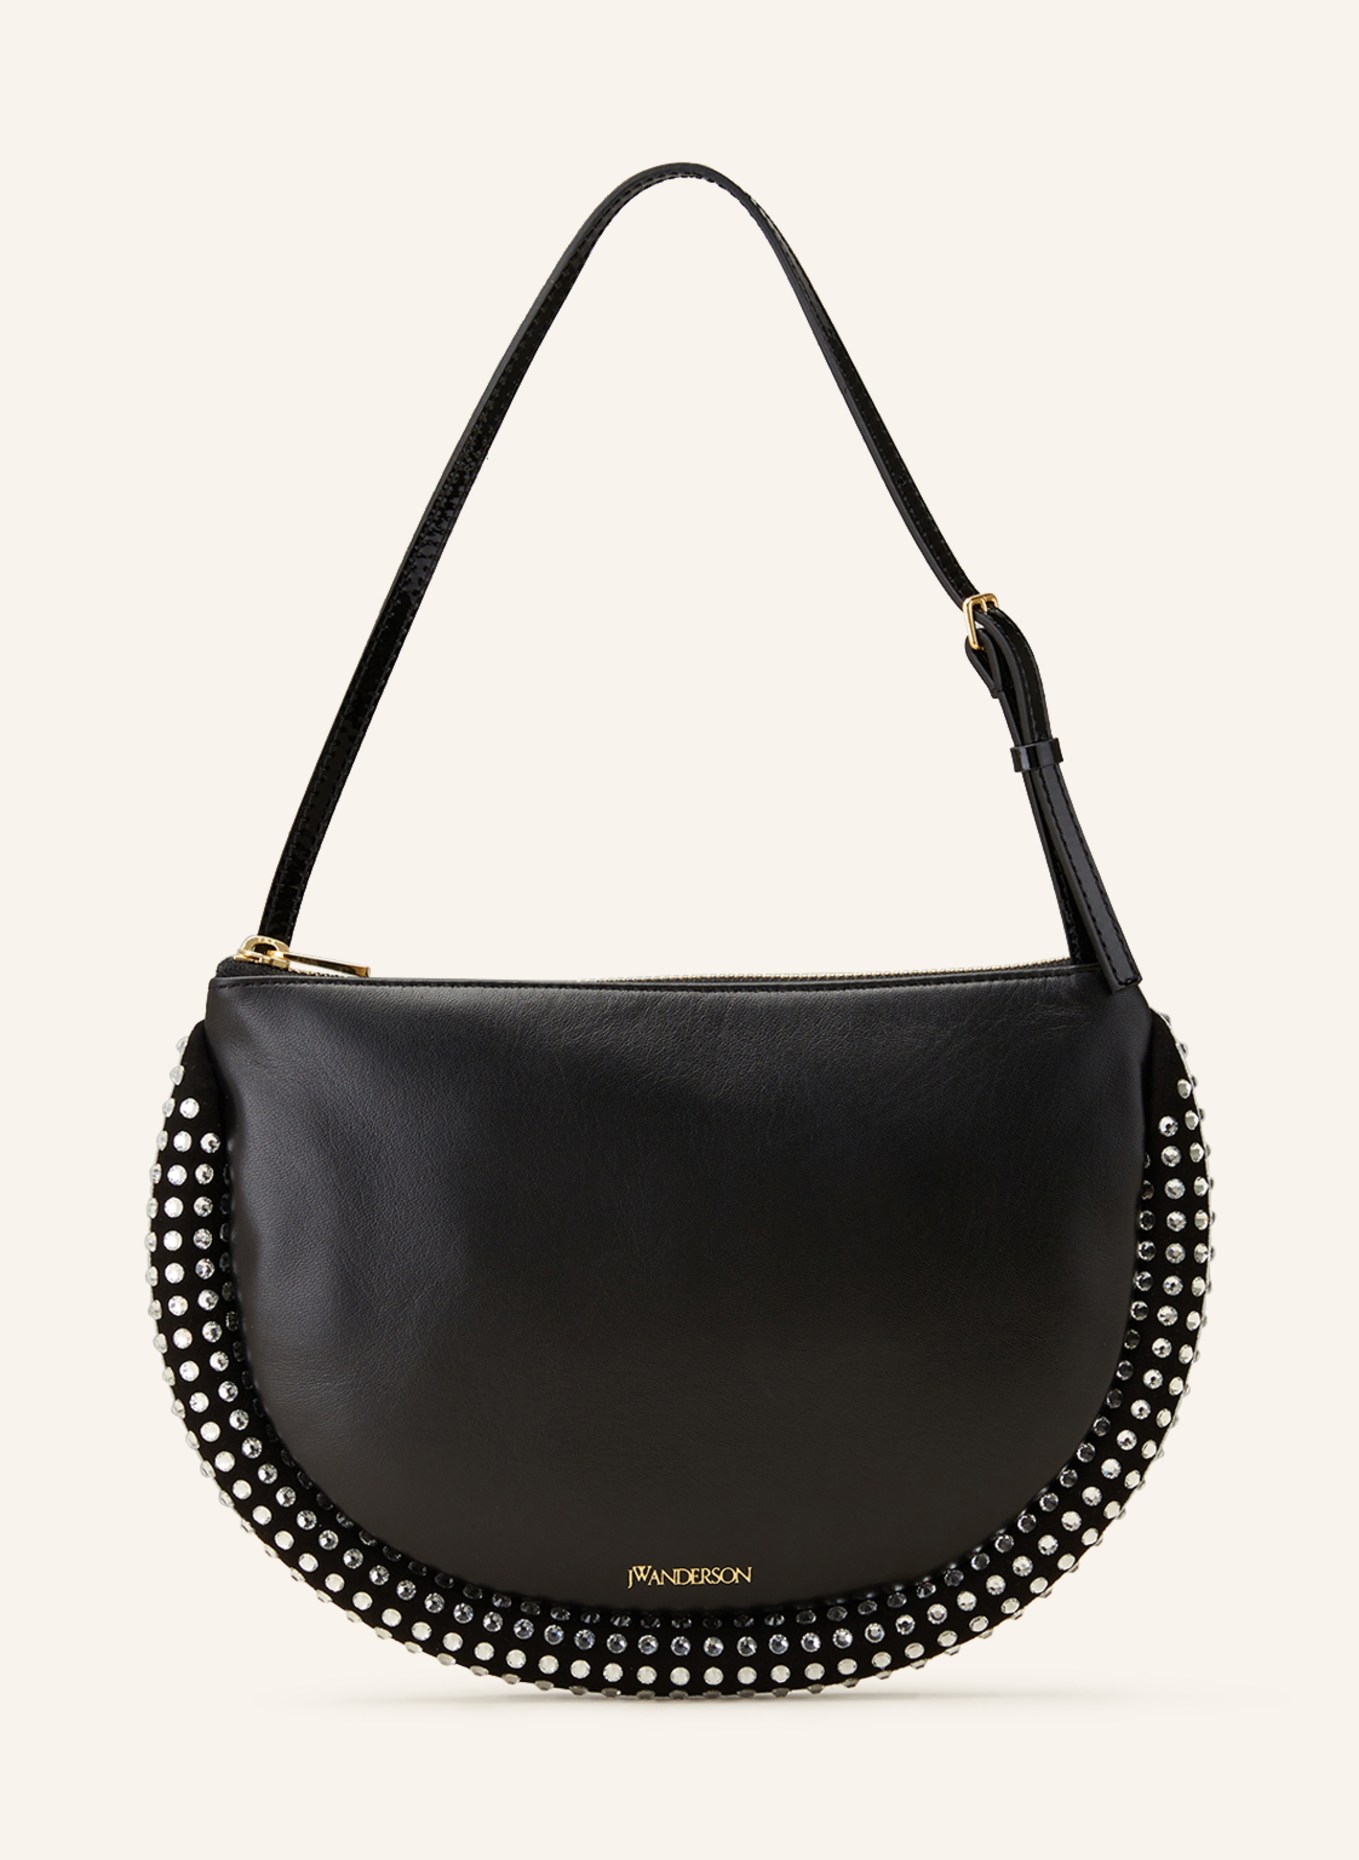 JW ANDERSON Handbag BUMPER with decorative gems, Color: BLACK/ SILVER (Image 1)